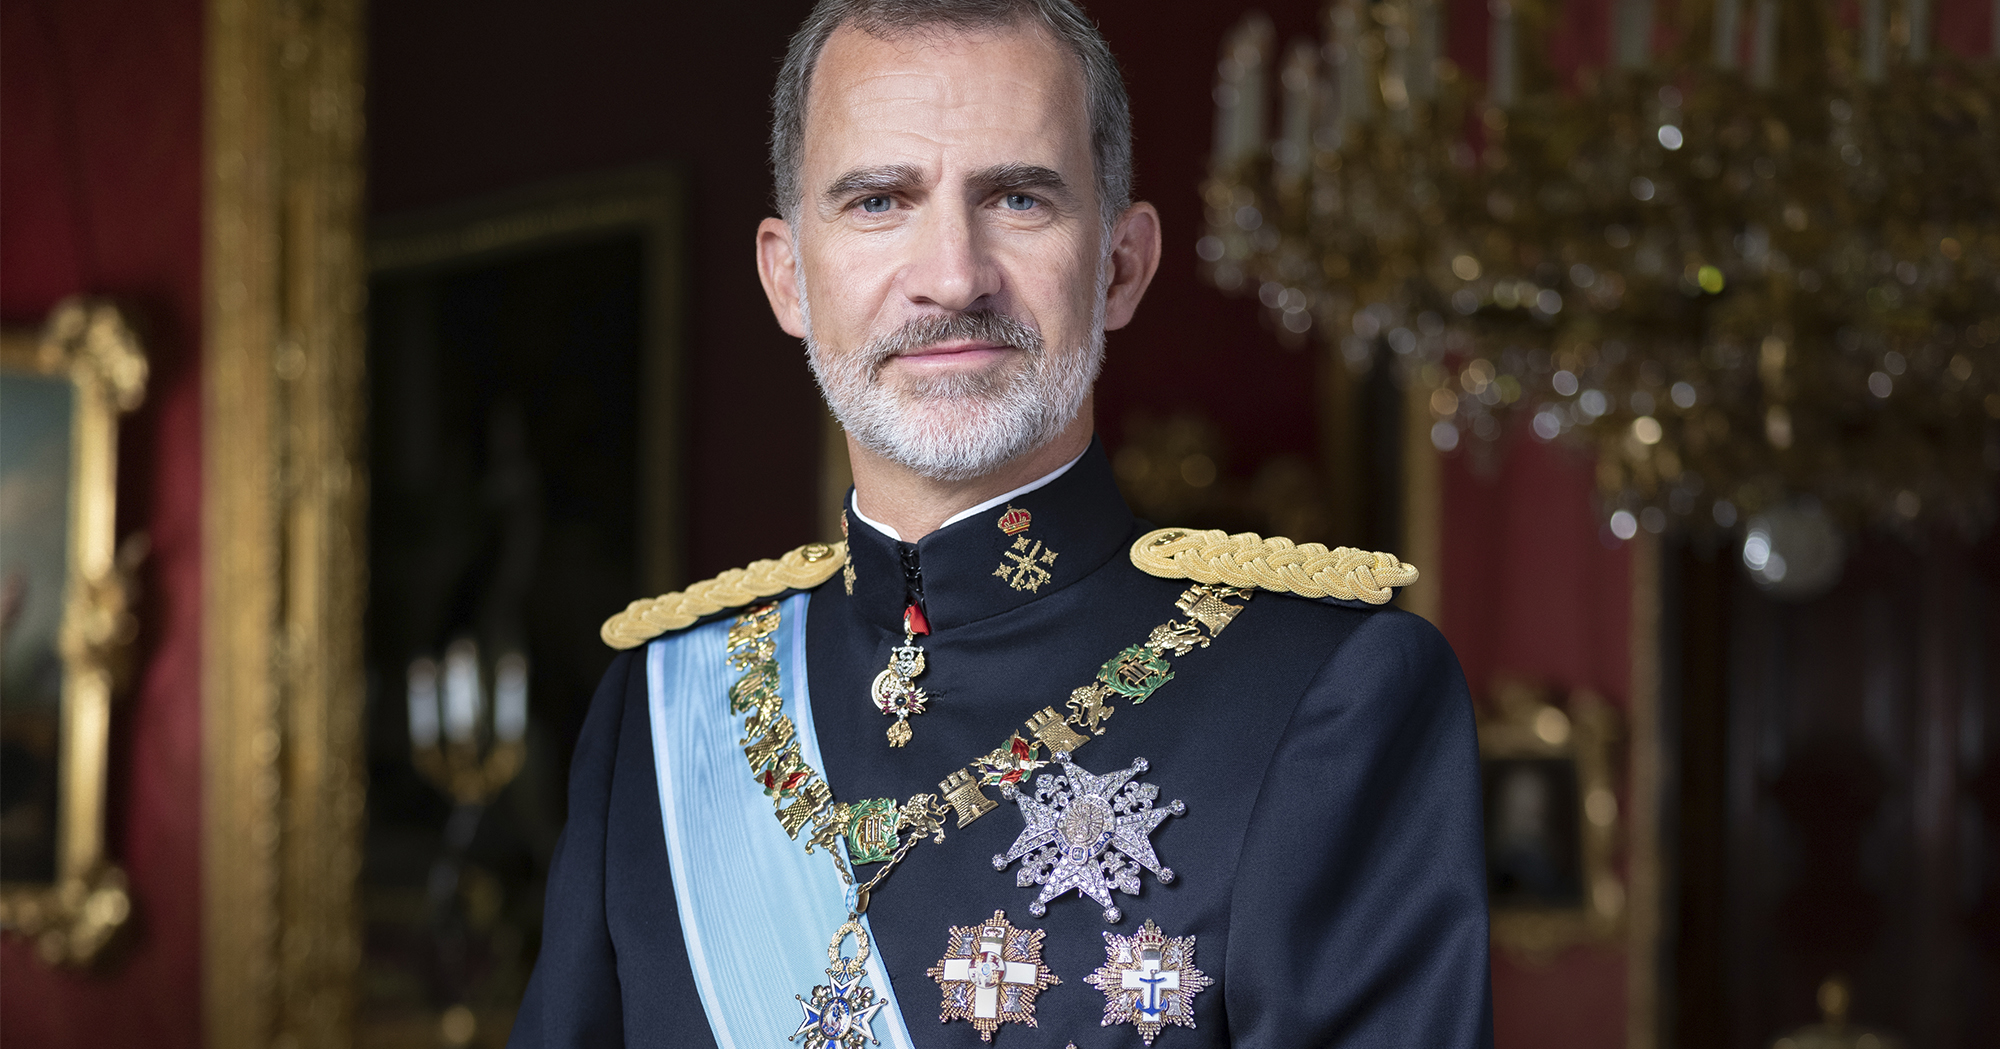 Uniforme Ejercito de Tierra español (I) Eventos de Gran Etiqueta. Rey Felipe VI con con uniforme de gran etiqueta de Capitán General del Ejército de Tierra 